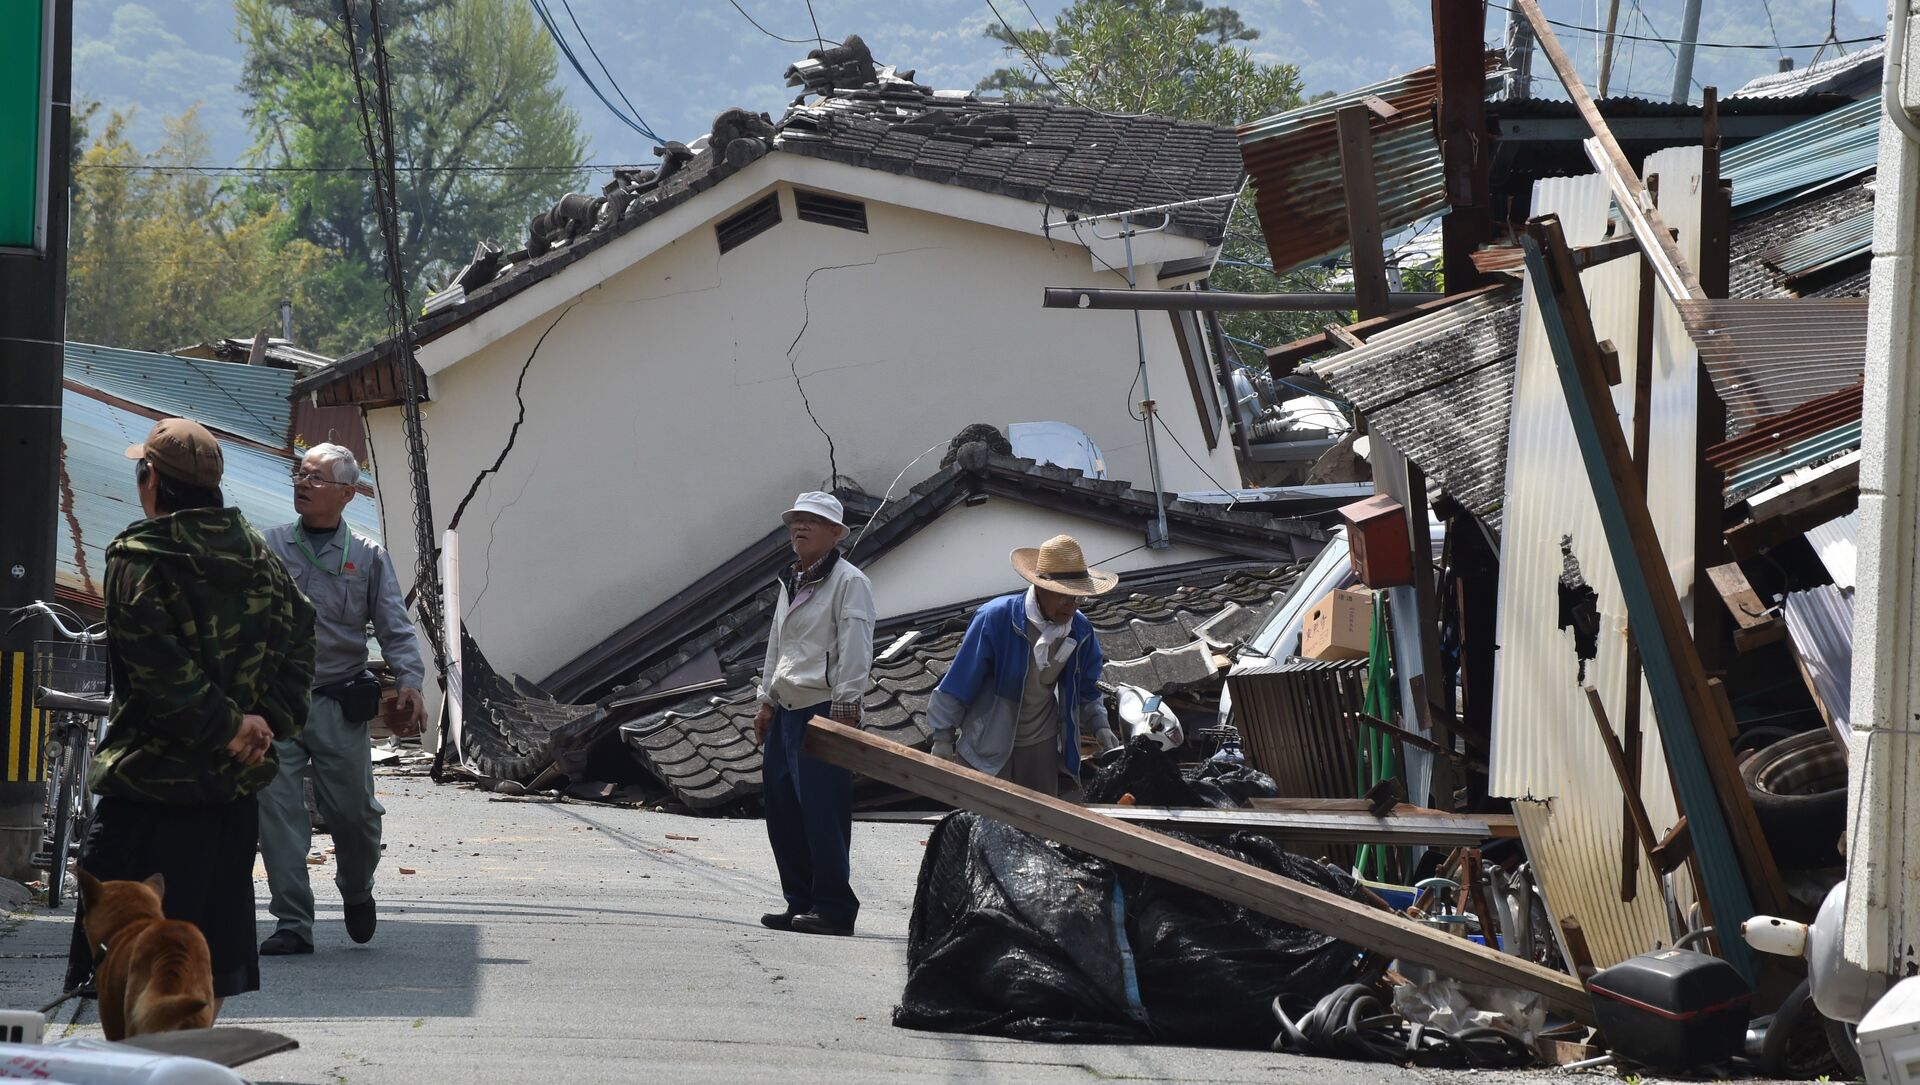 Разрушенные в результате землетрясения дома в поселке Масики префектуры Кумамото. Япония, 19 апреля 2016 года - Sputnik Azərbaycan, 1920, 13.02.2021